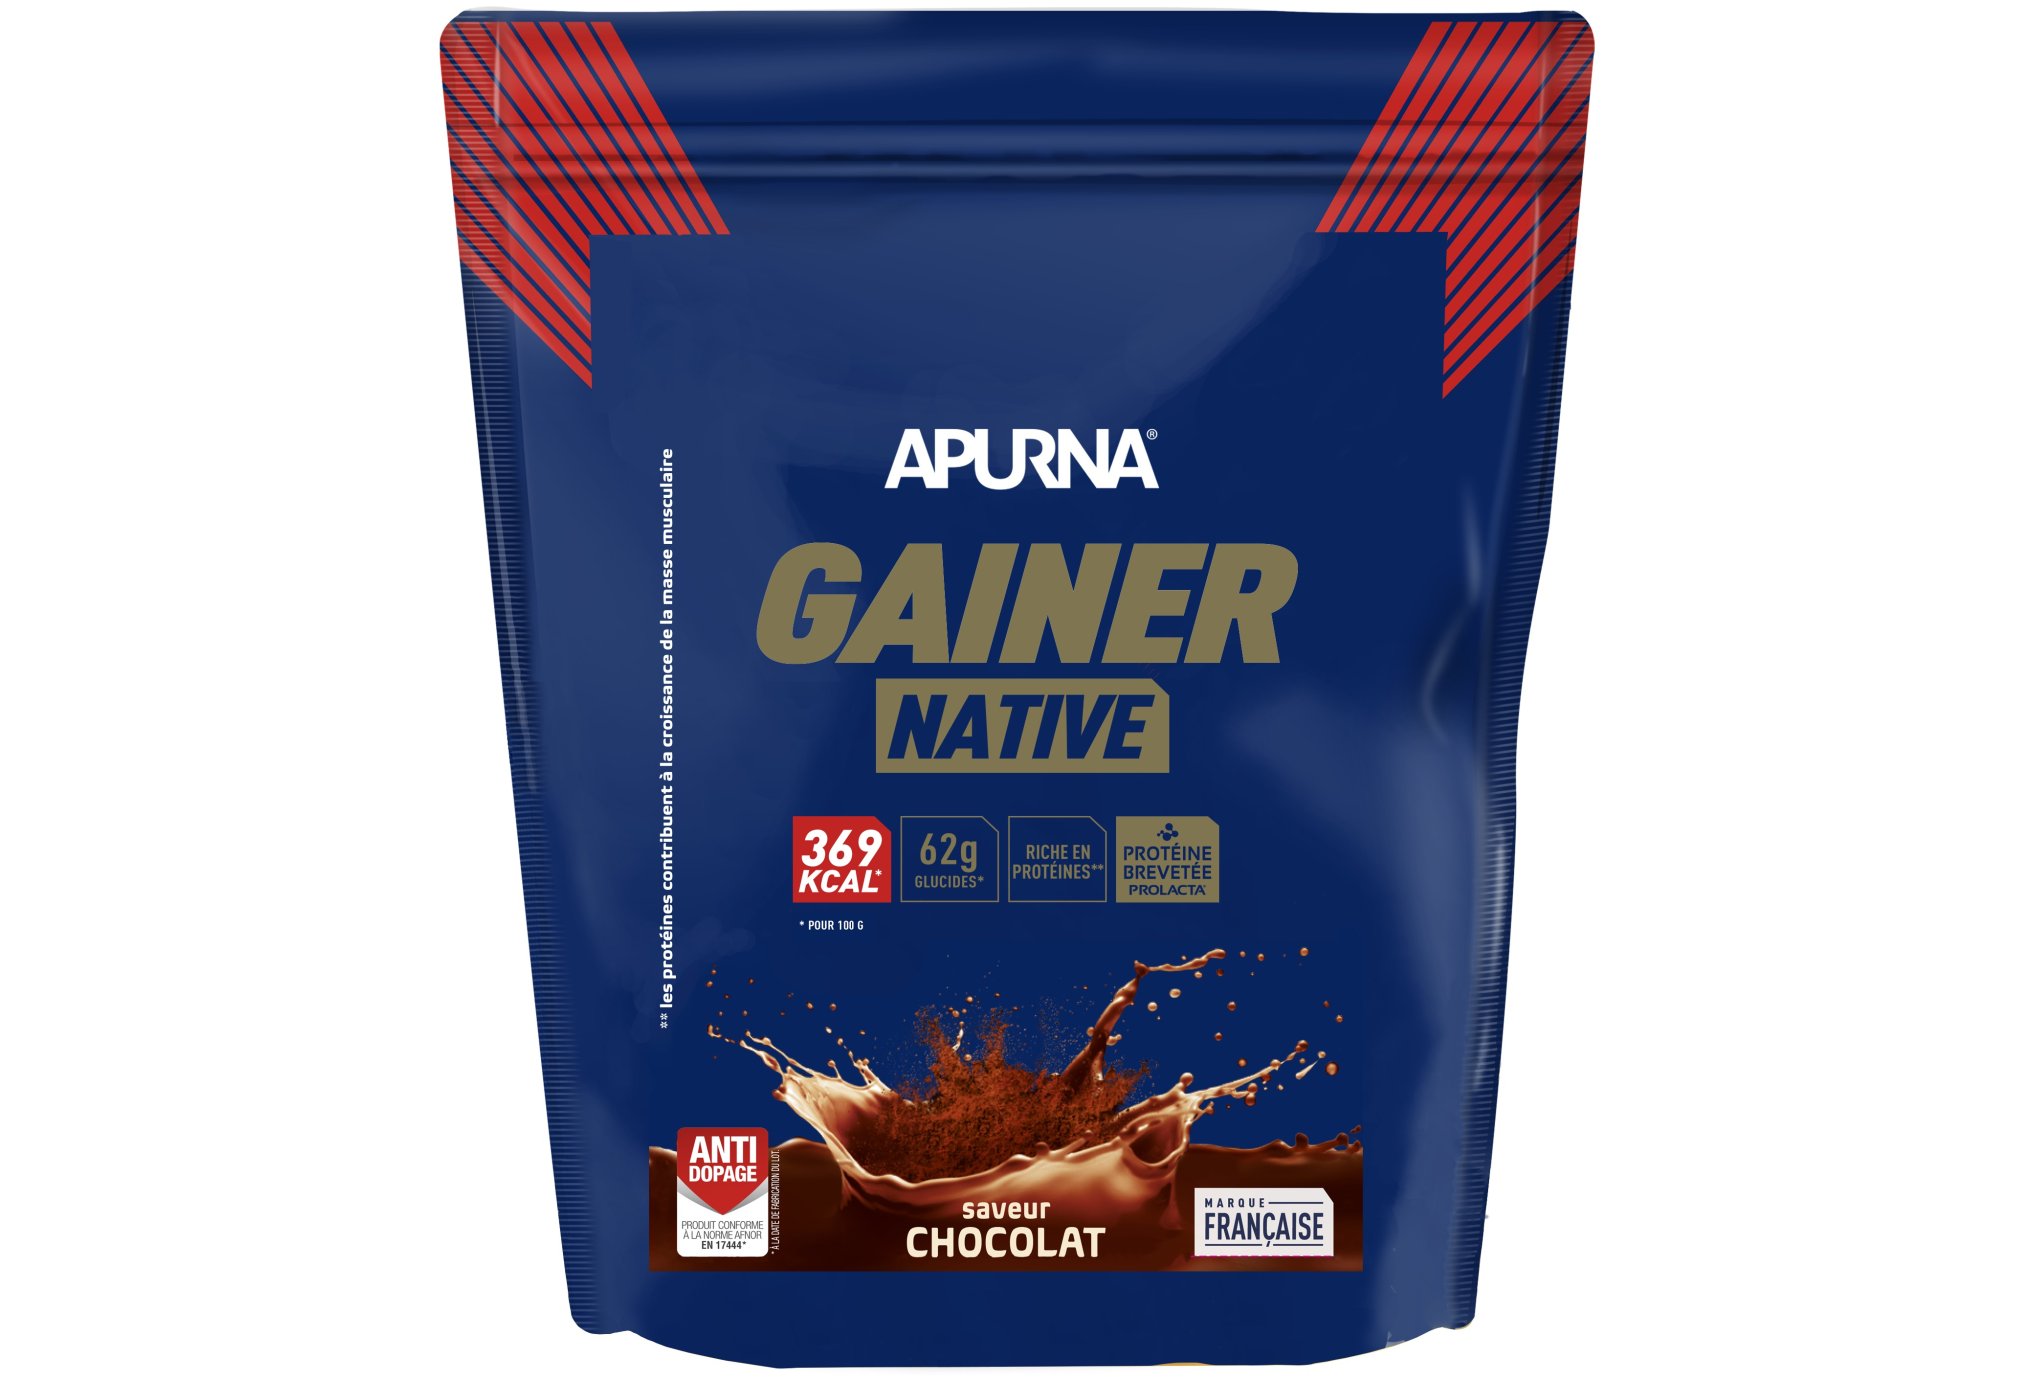 Apurna Gainer Native 1.1 kg - Chocolat Diététique Protéines / récupération